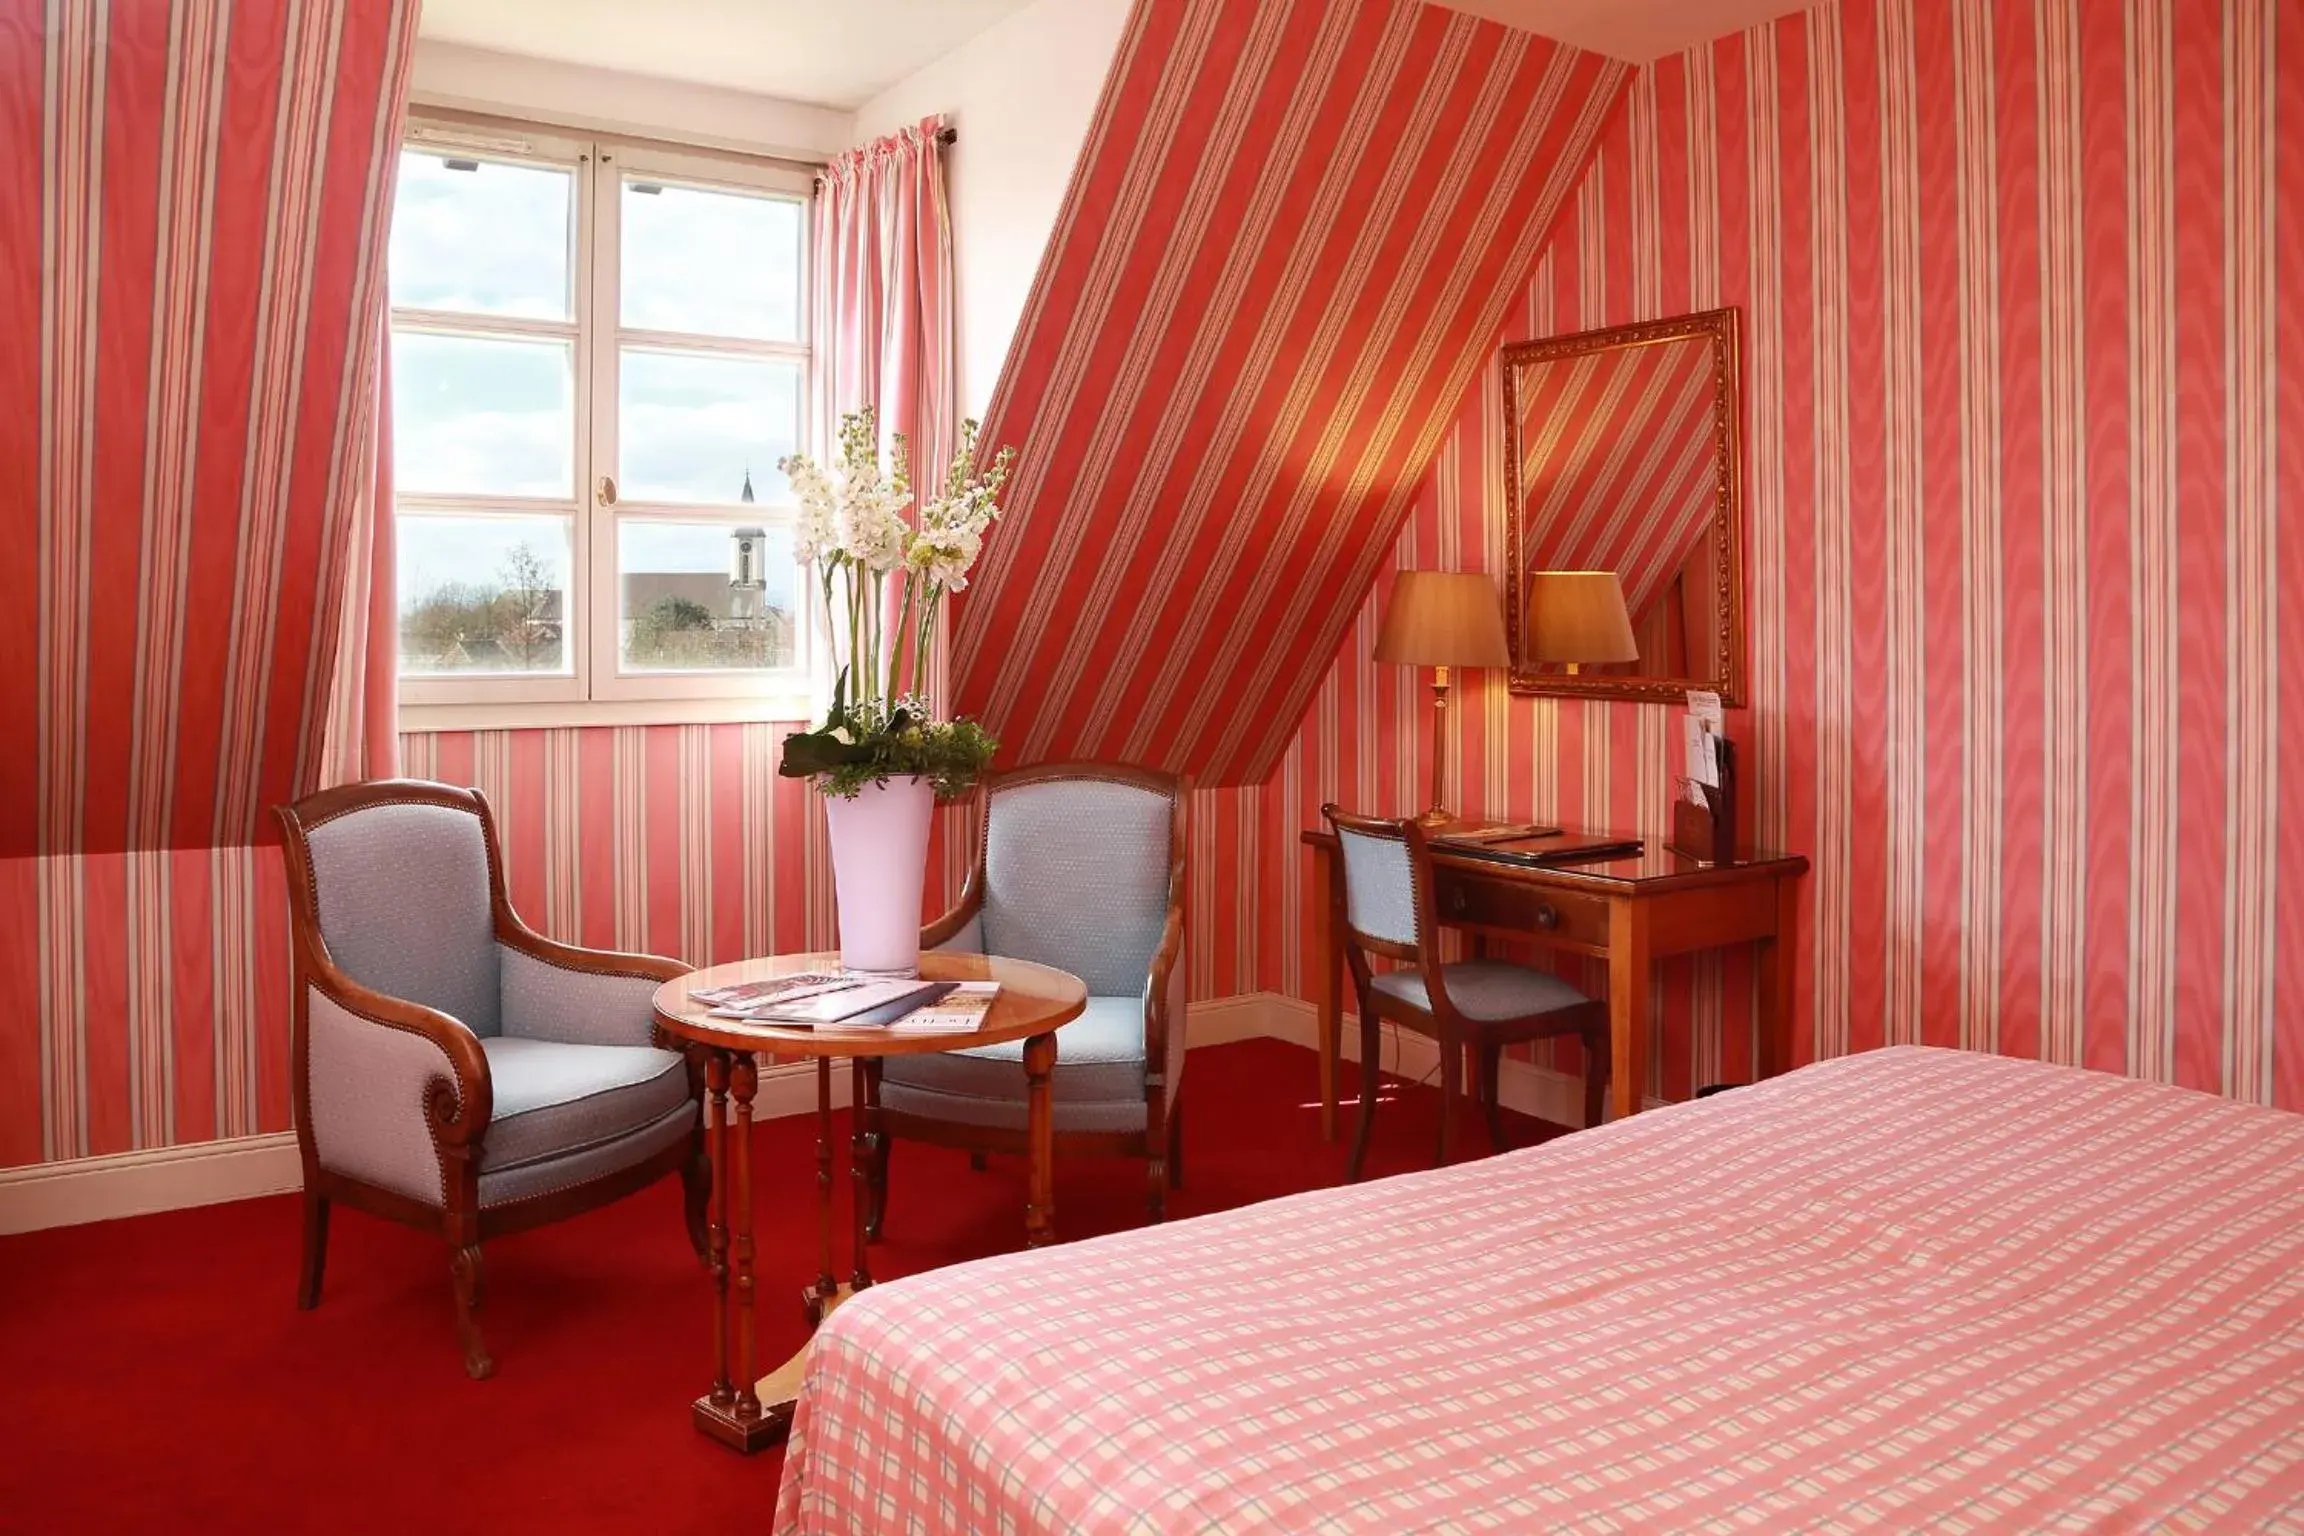 Bedroom, Seating Area in Hôtel & Spa Château de l'ile